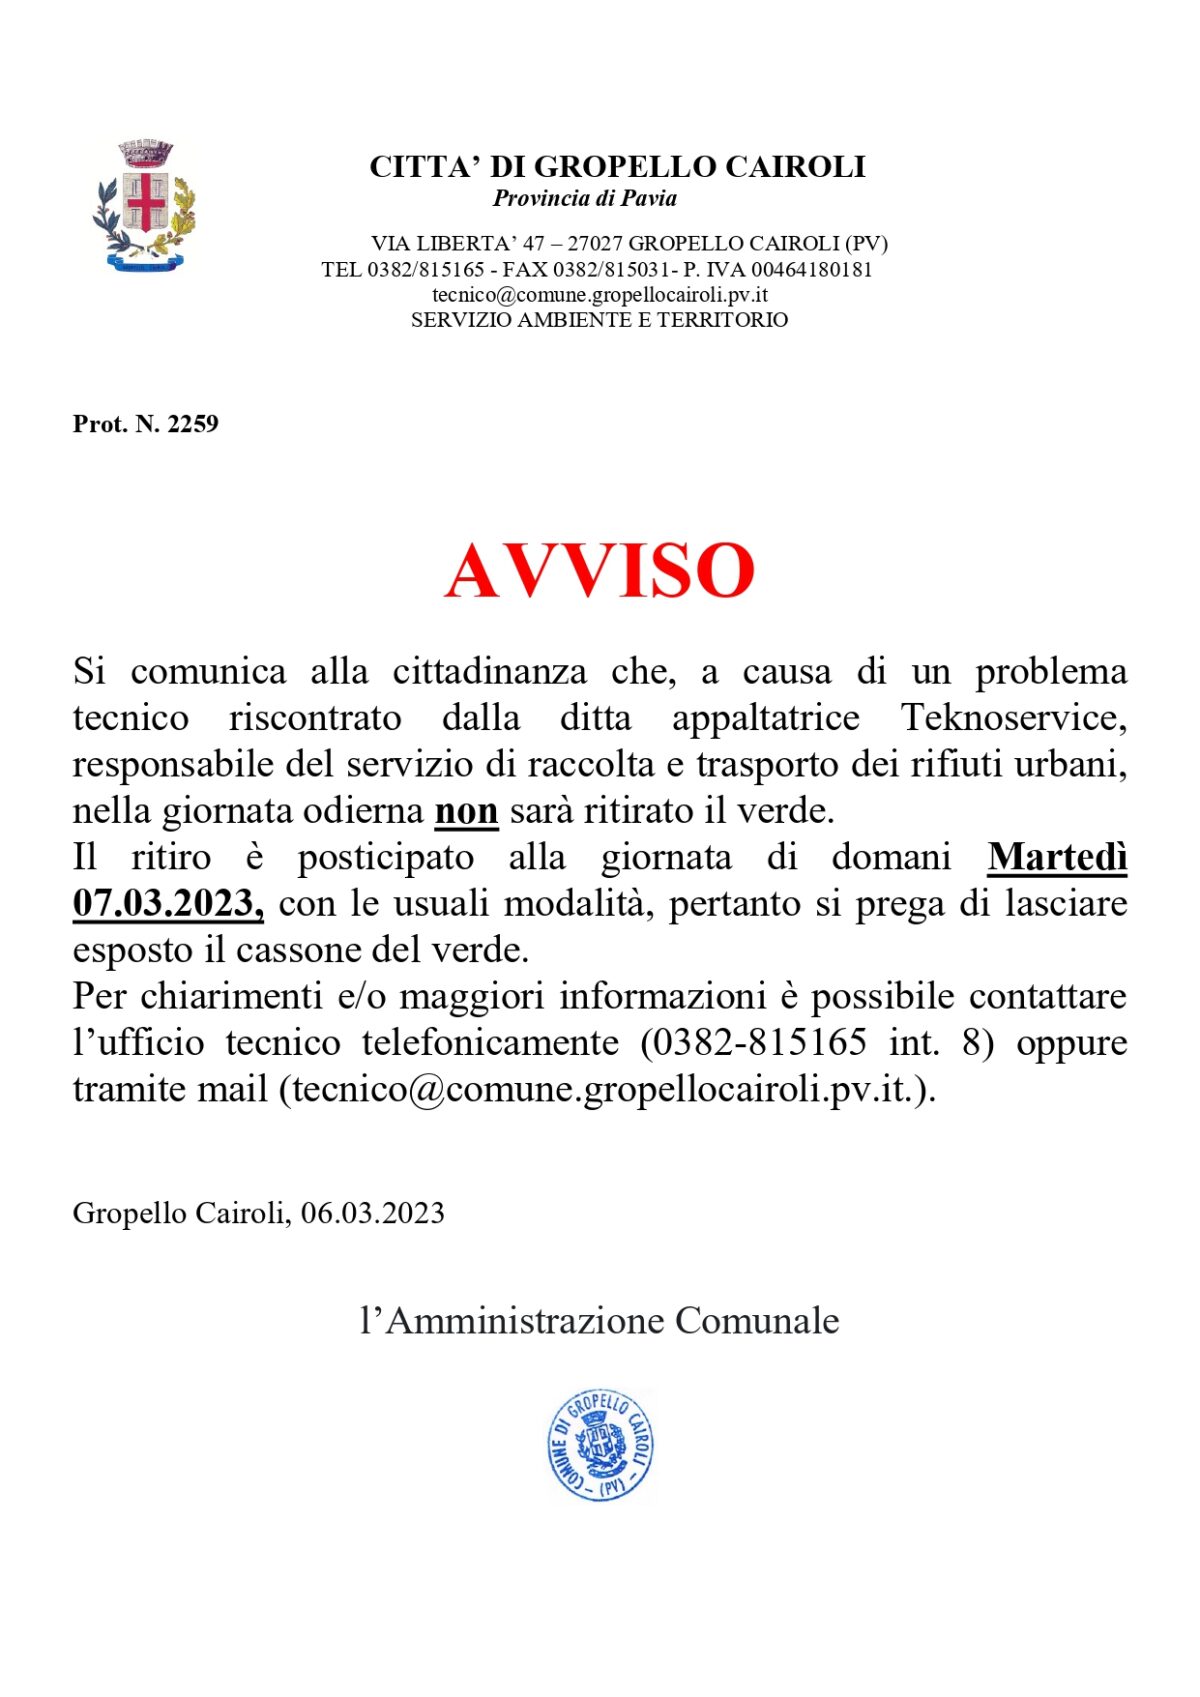 AVVISO: RITIRO DEL VERDE POSTICIPATO ALLA DATA DI DOMANI MARTEDI’ 07.03.2023